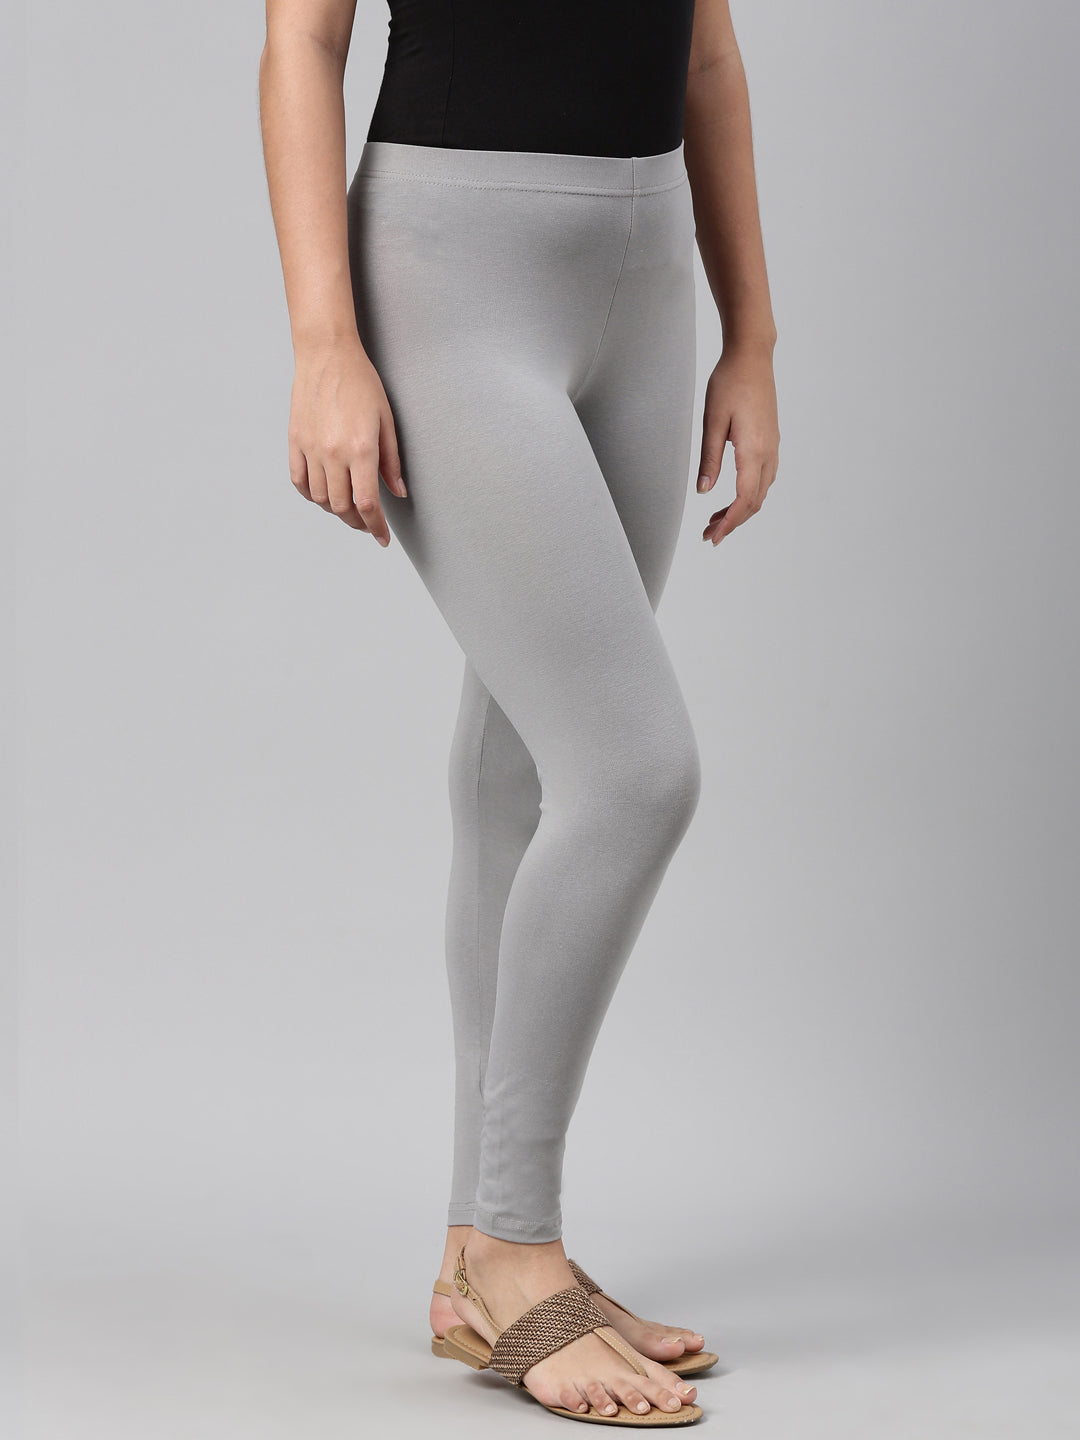 Light Grey Colour Ankle Length Leggings – Tarsi